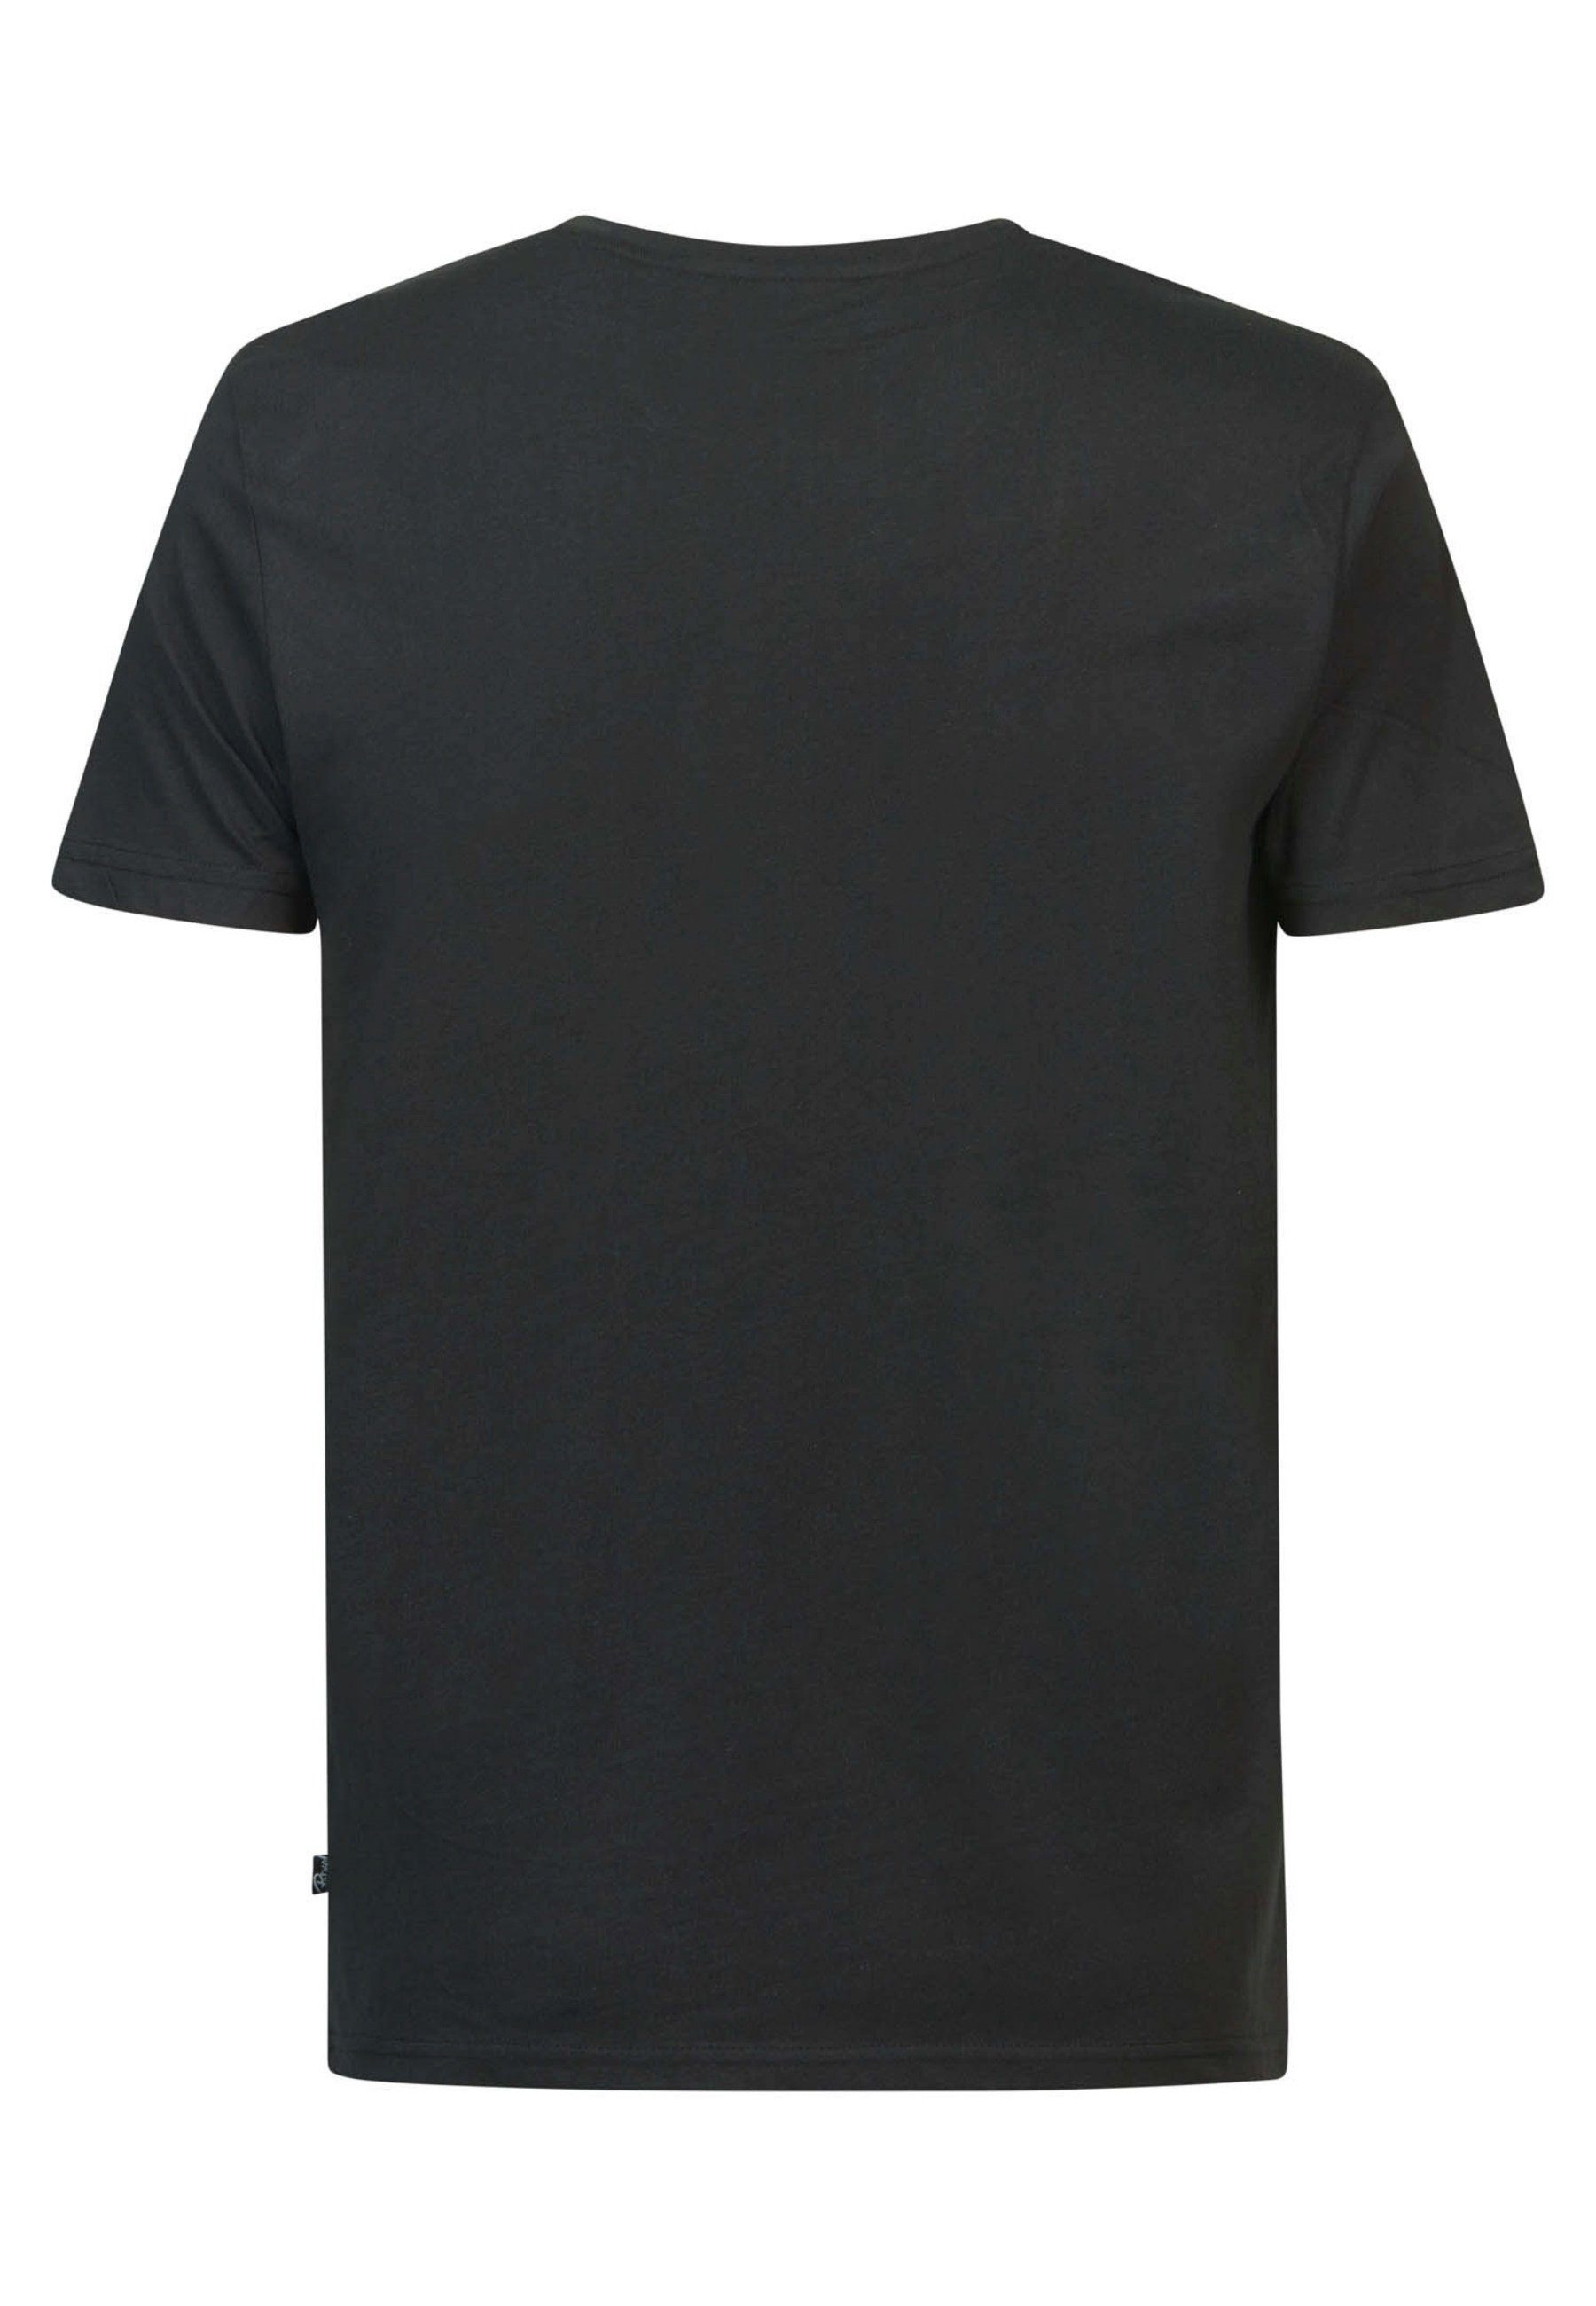 Petrol Industries Kurzarmshirt T-Shirt schwarz T-Shirt